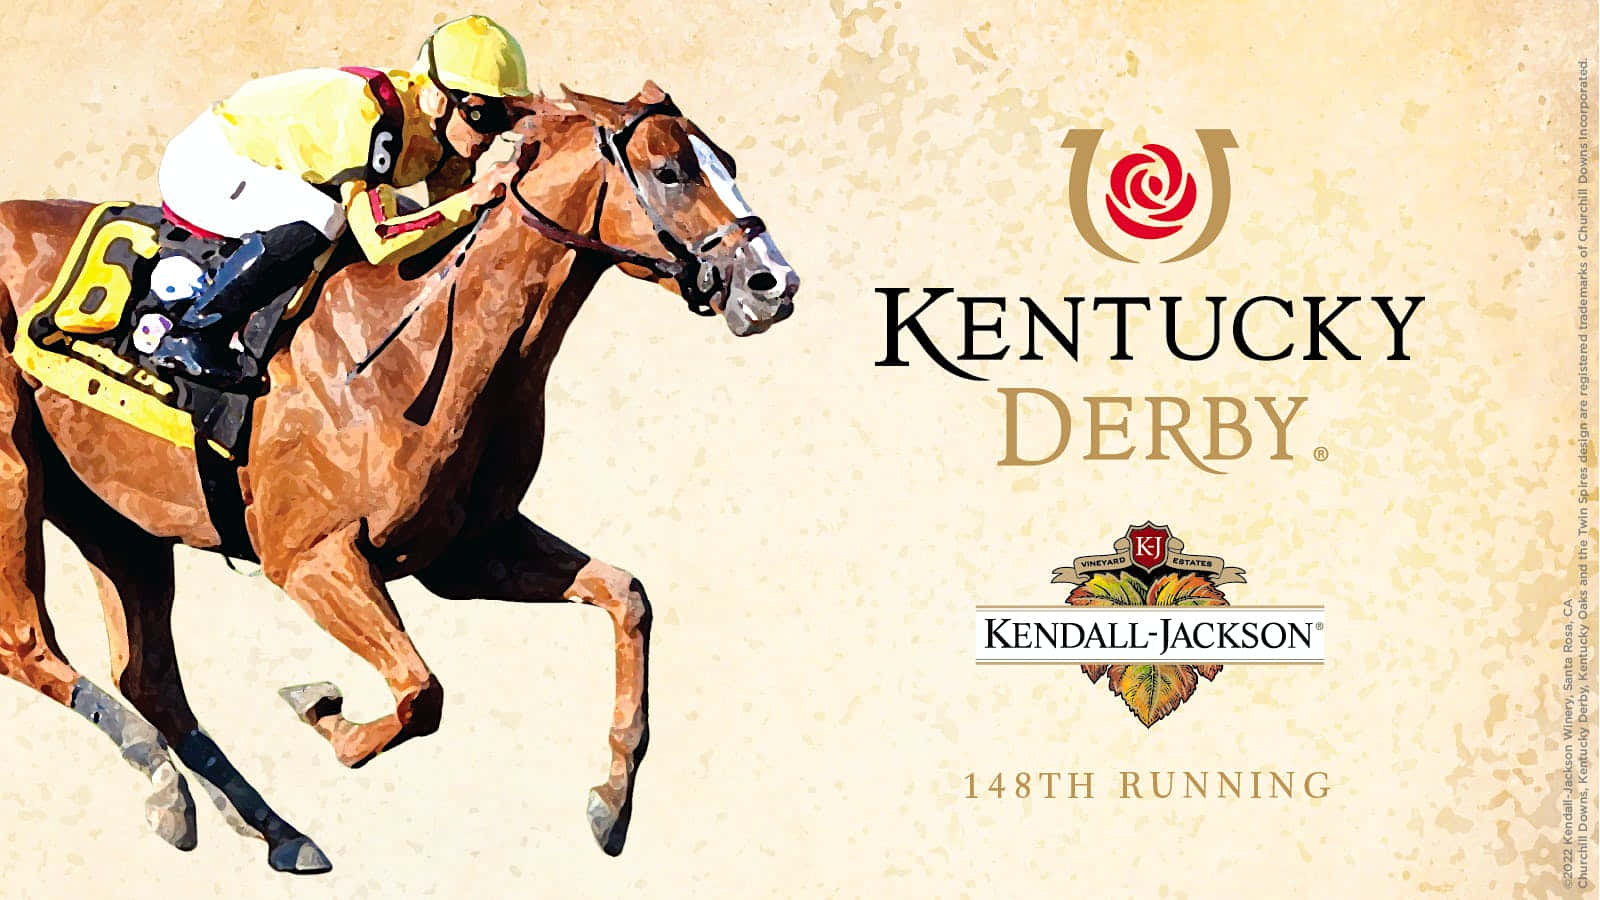 Kentucky Derby - Kentucky Derby - Kentucky Derby - Kentucky